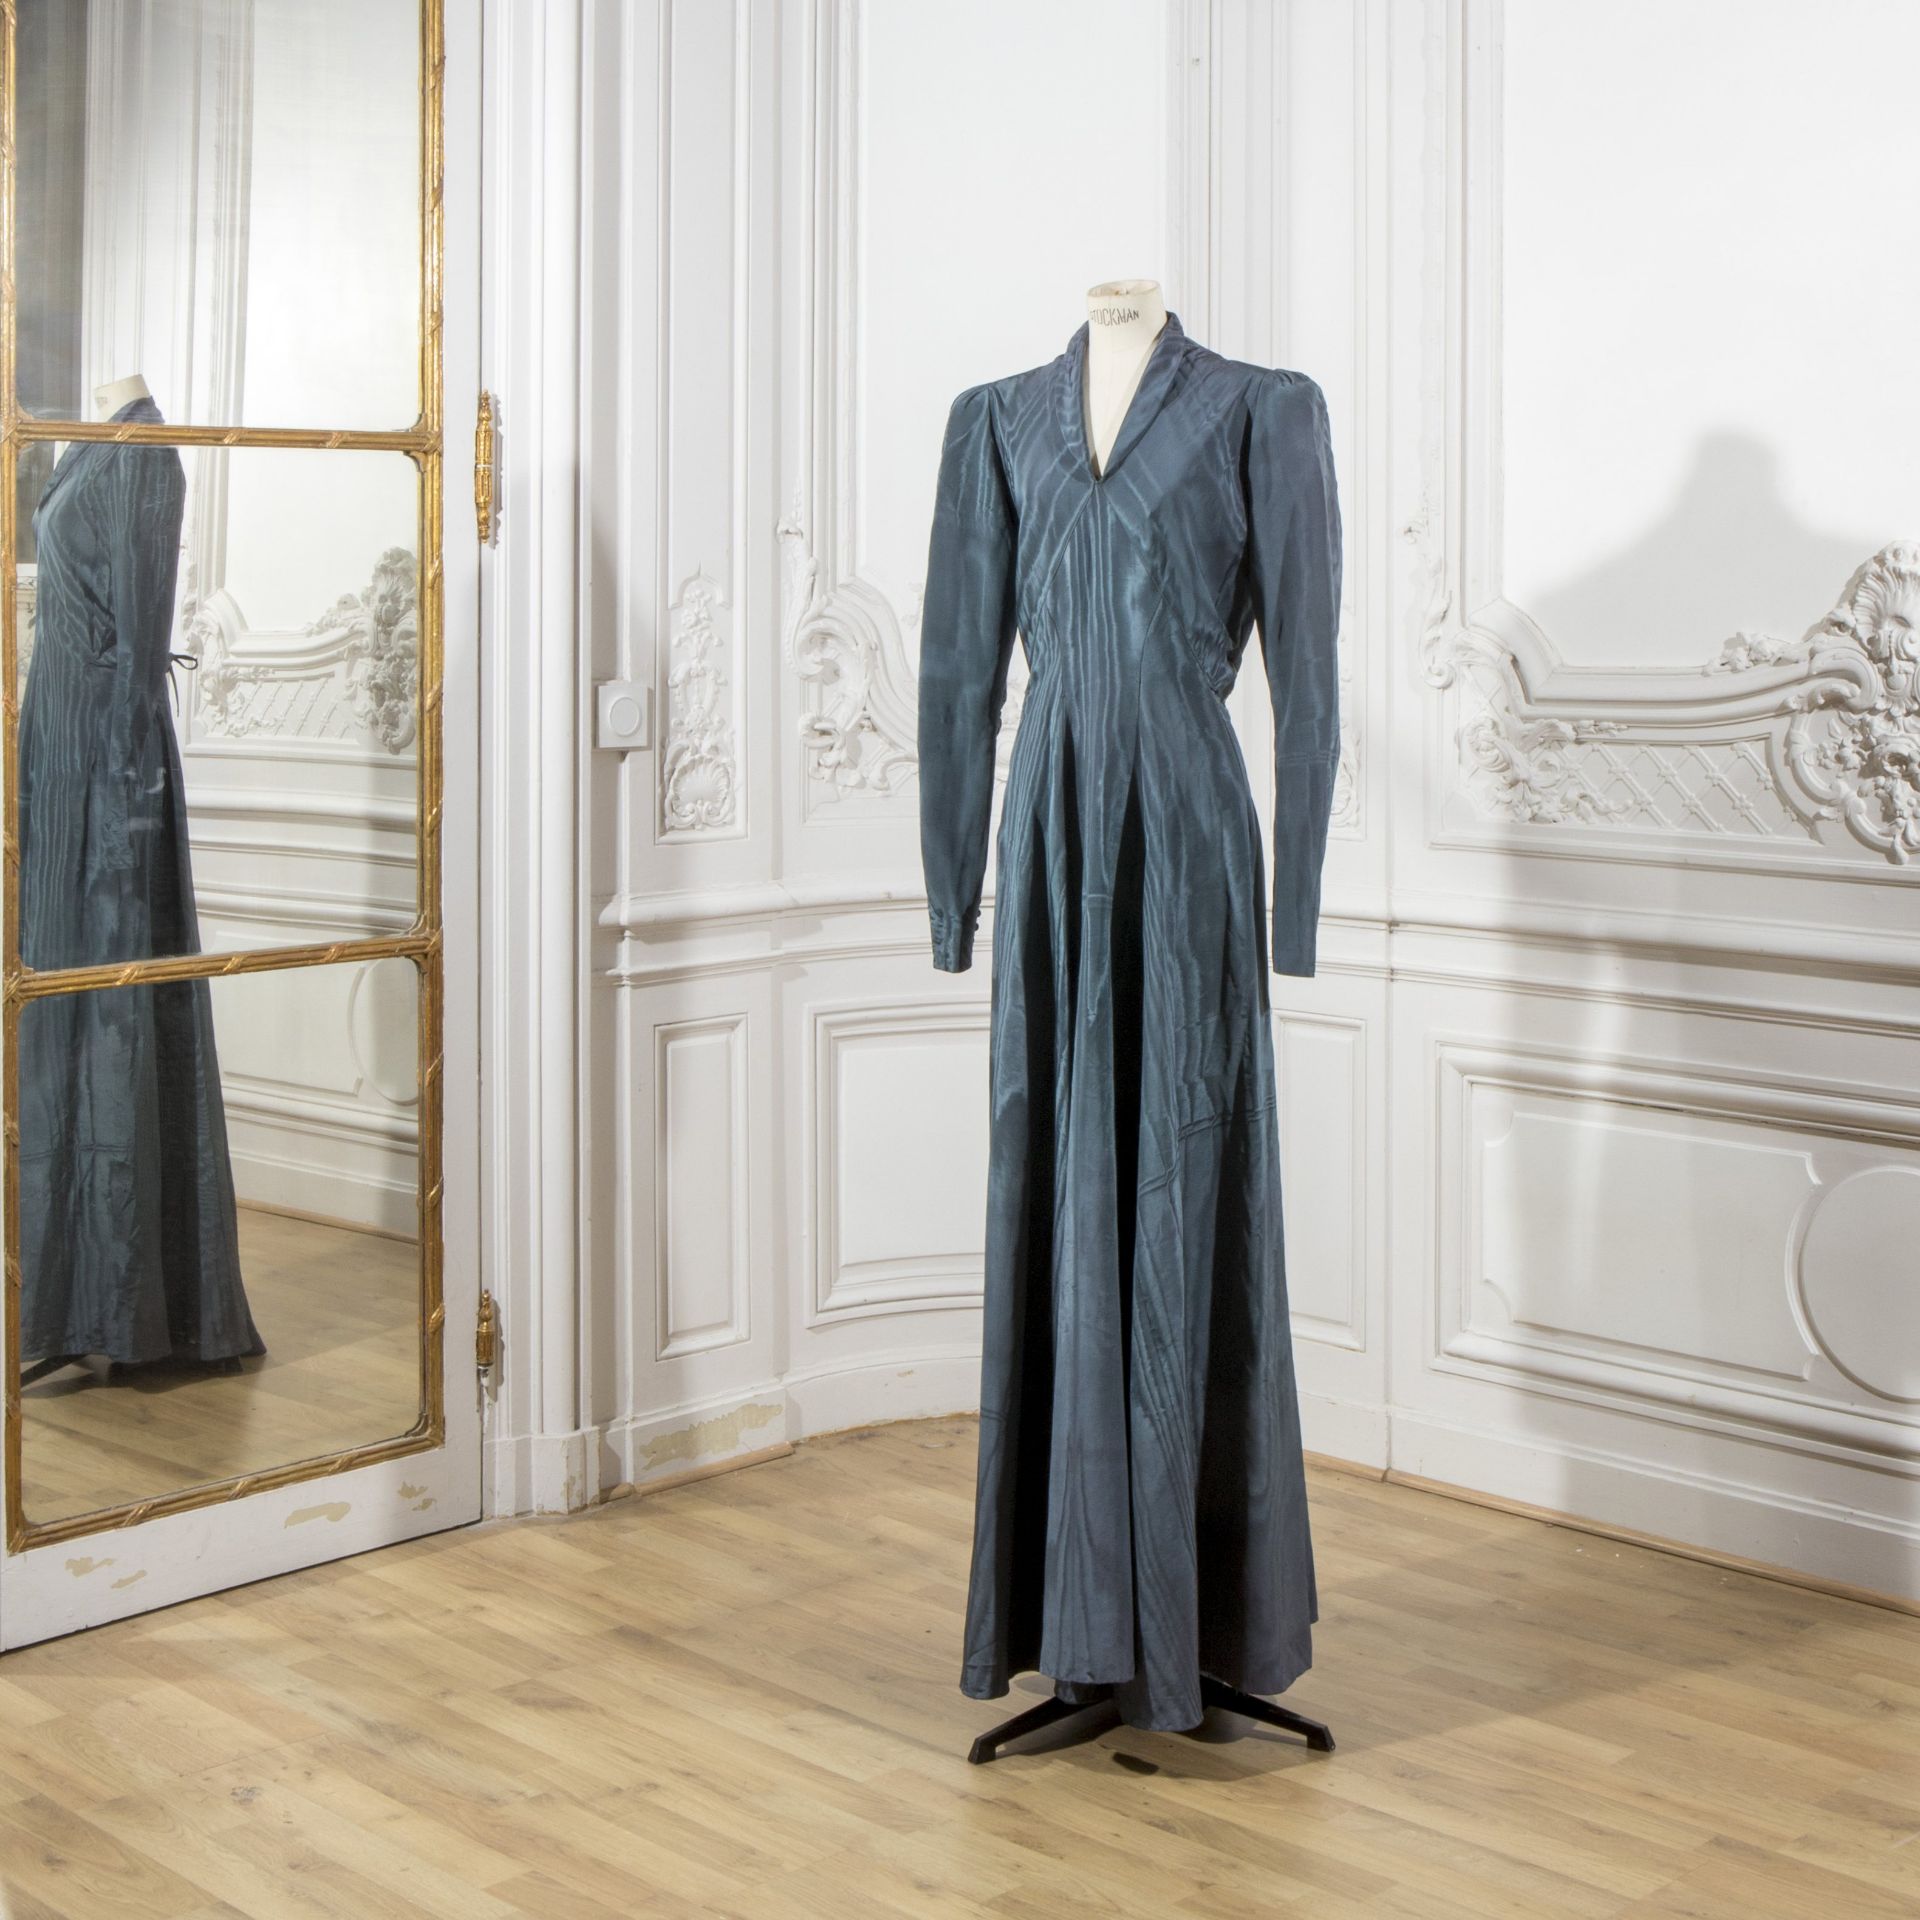 Anonyme, collection Haute Couture, circa 1940. Robe du soir longue en moire ardoise.